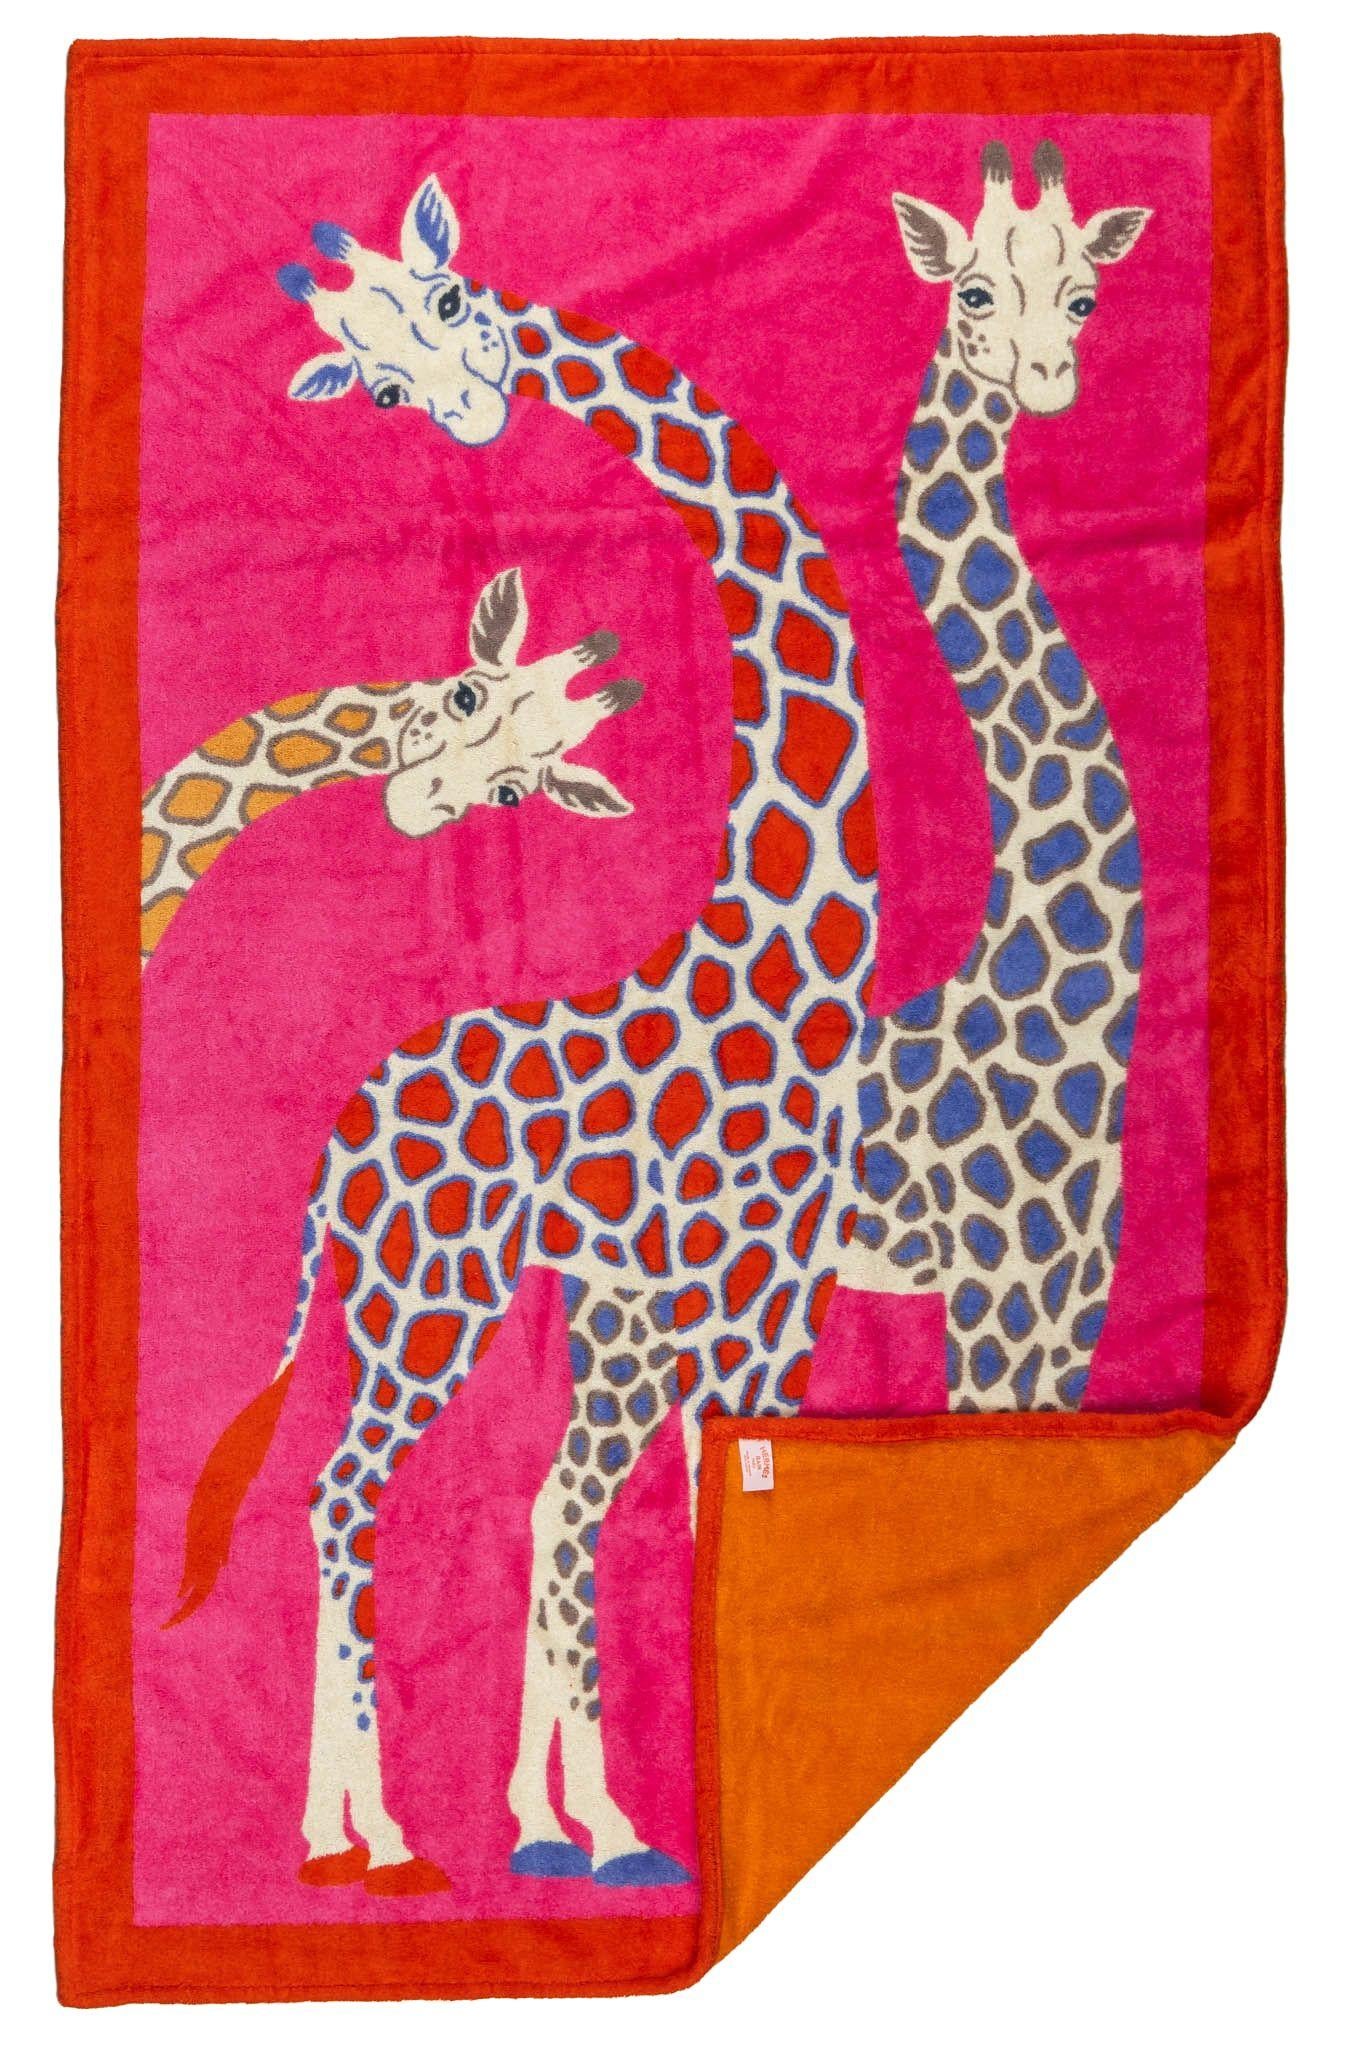 Hermès neues Strandtuch aus Baumwolle in fuchsia und rot mit Giraffenmotiv. Kommt mit Originalverpackung.